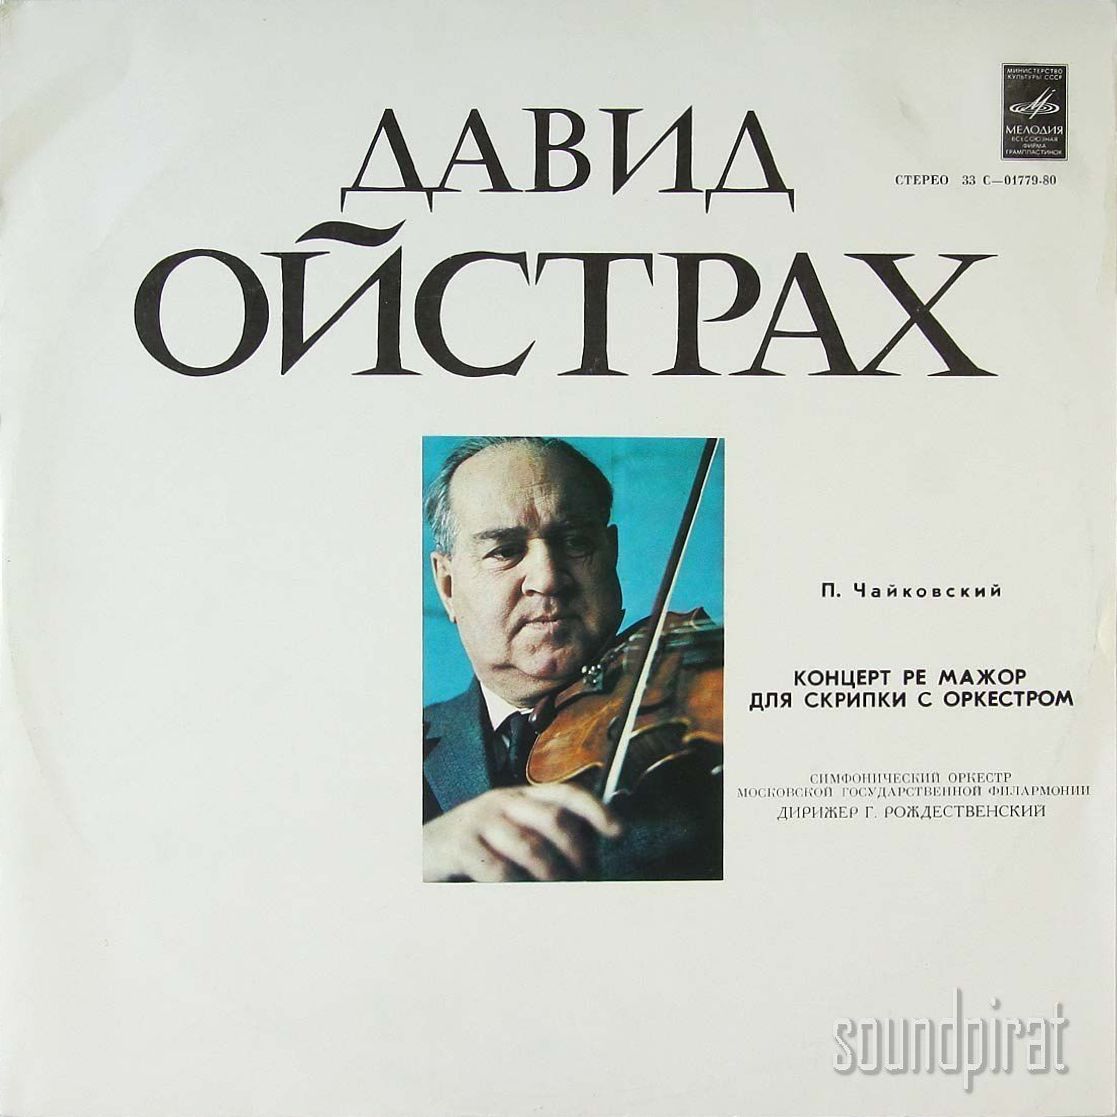 П. Чайковский: Концерт для скрипки с оркестром, Симфония № 6 (Д. Ойстрах)